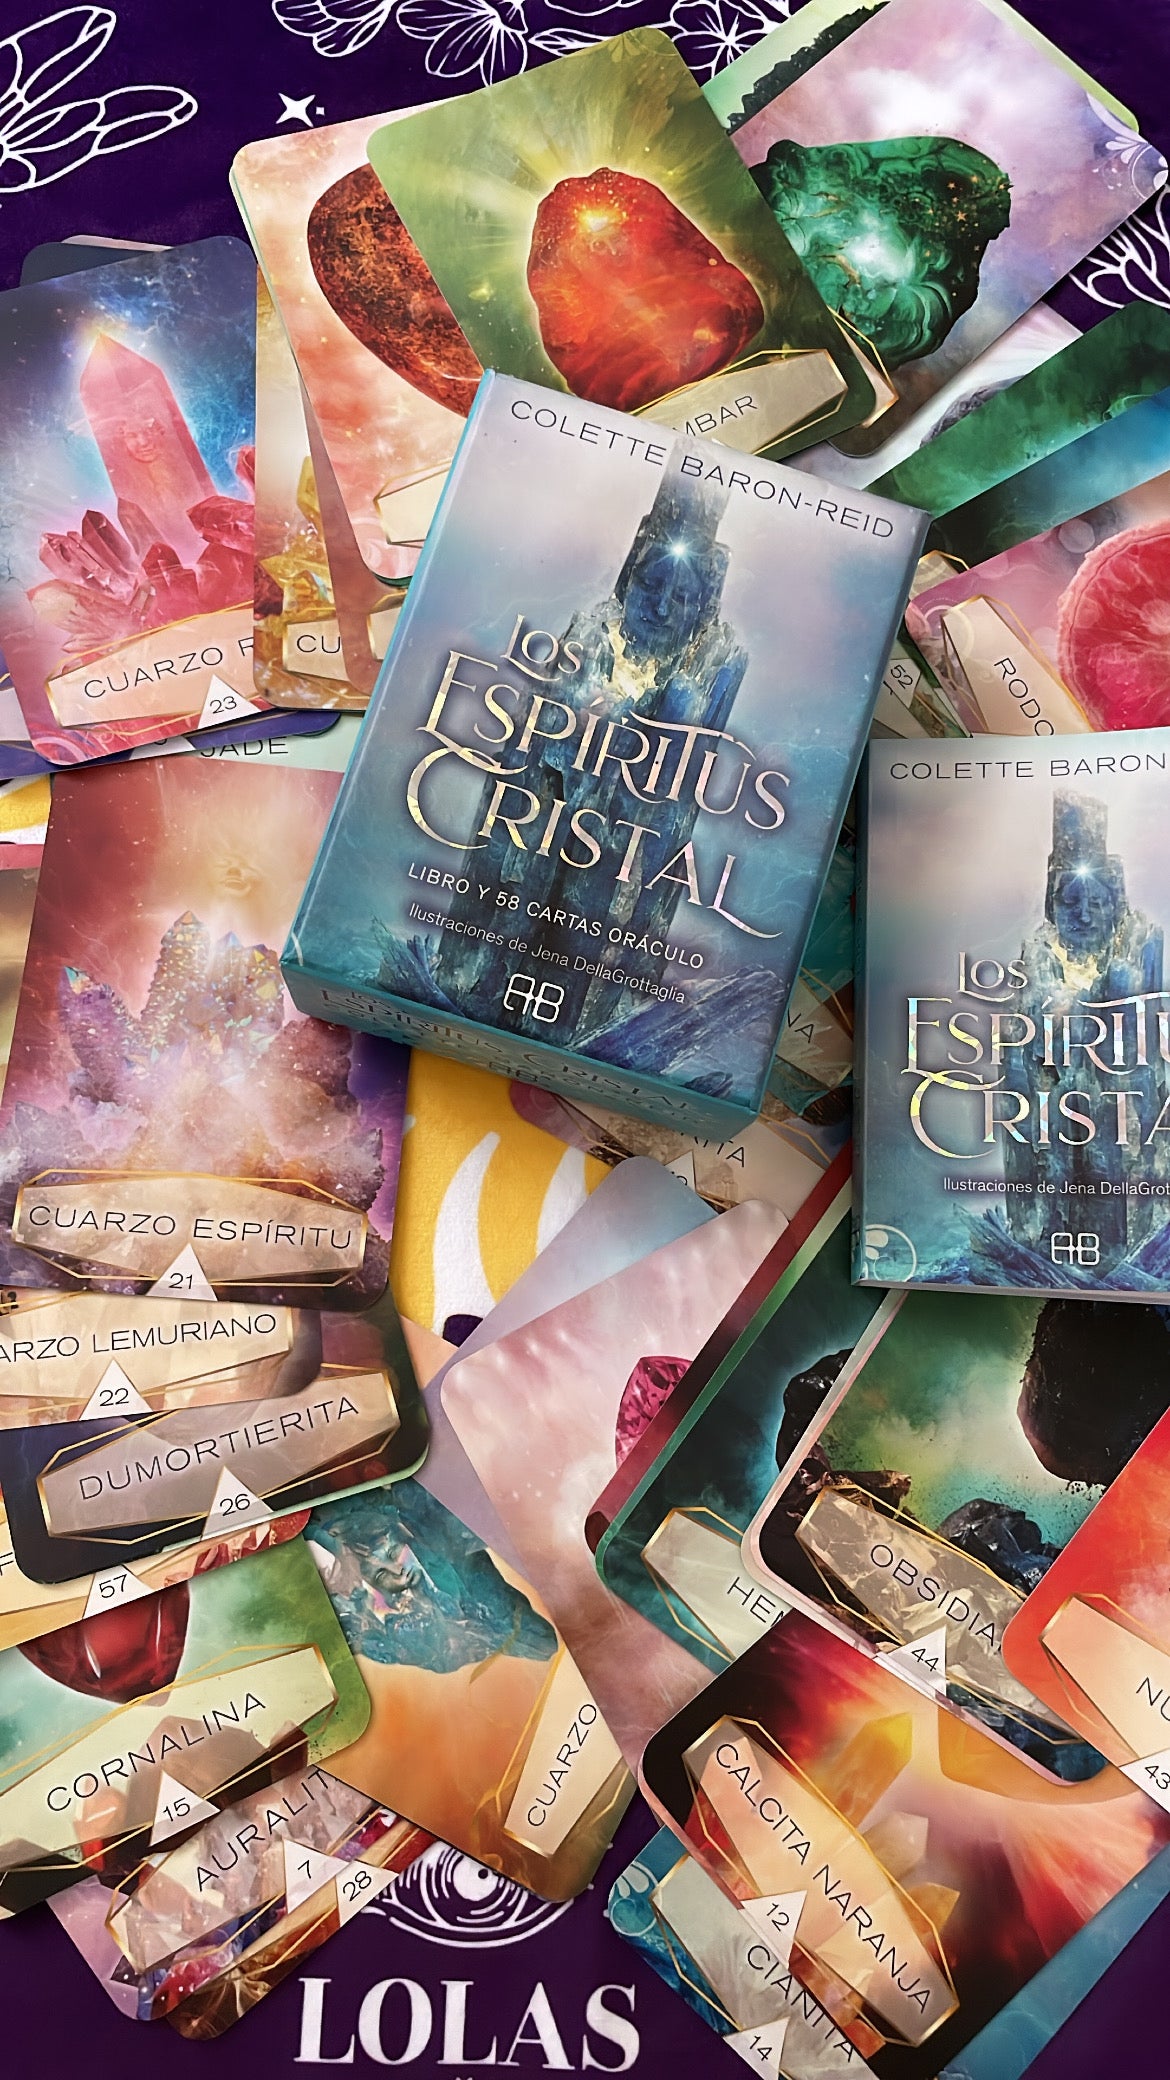 Oráculo Los espíritus Cristal - Colette Baron Reid (cartas+libro)